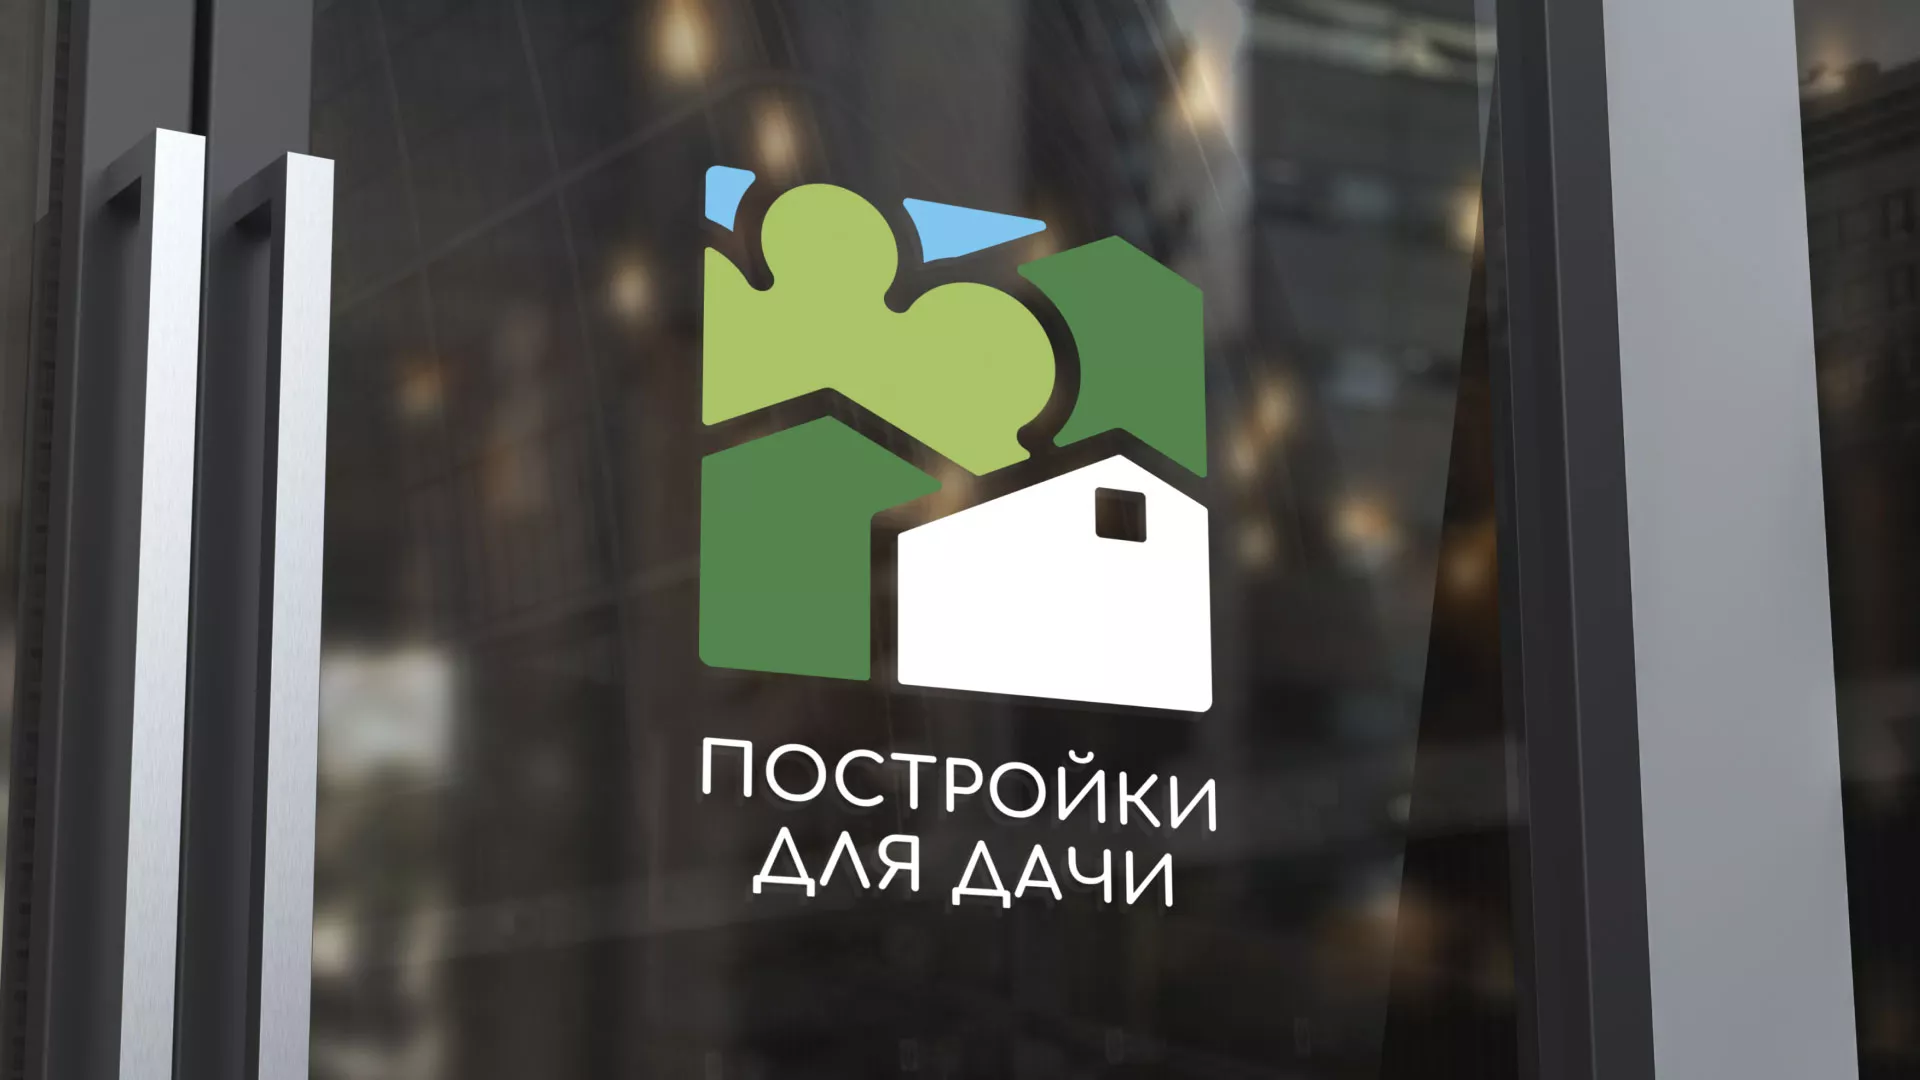 Разработка логотипа в Полярном для компании «Постройки для дачи»